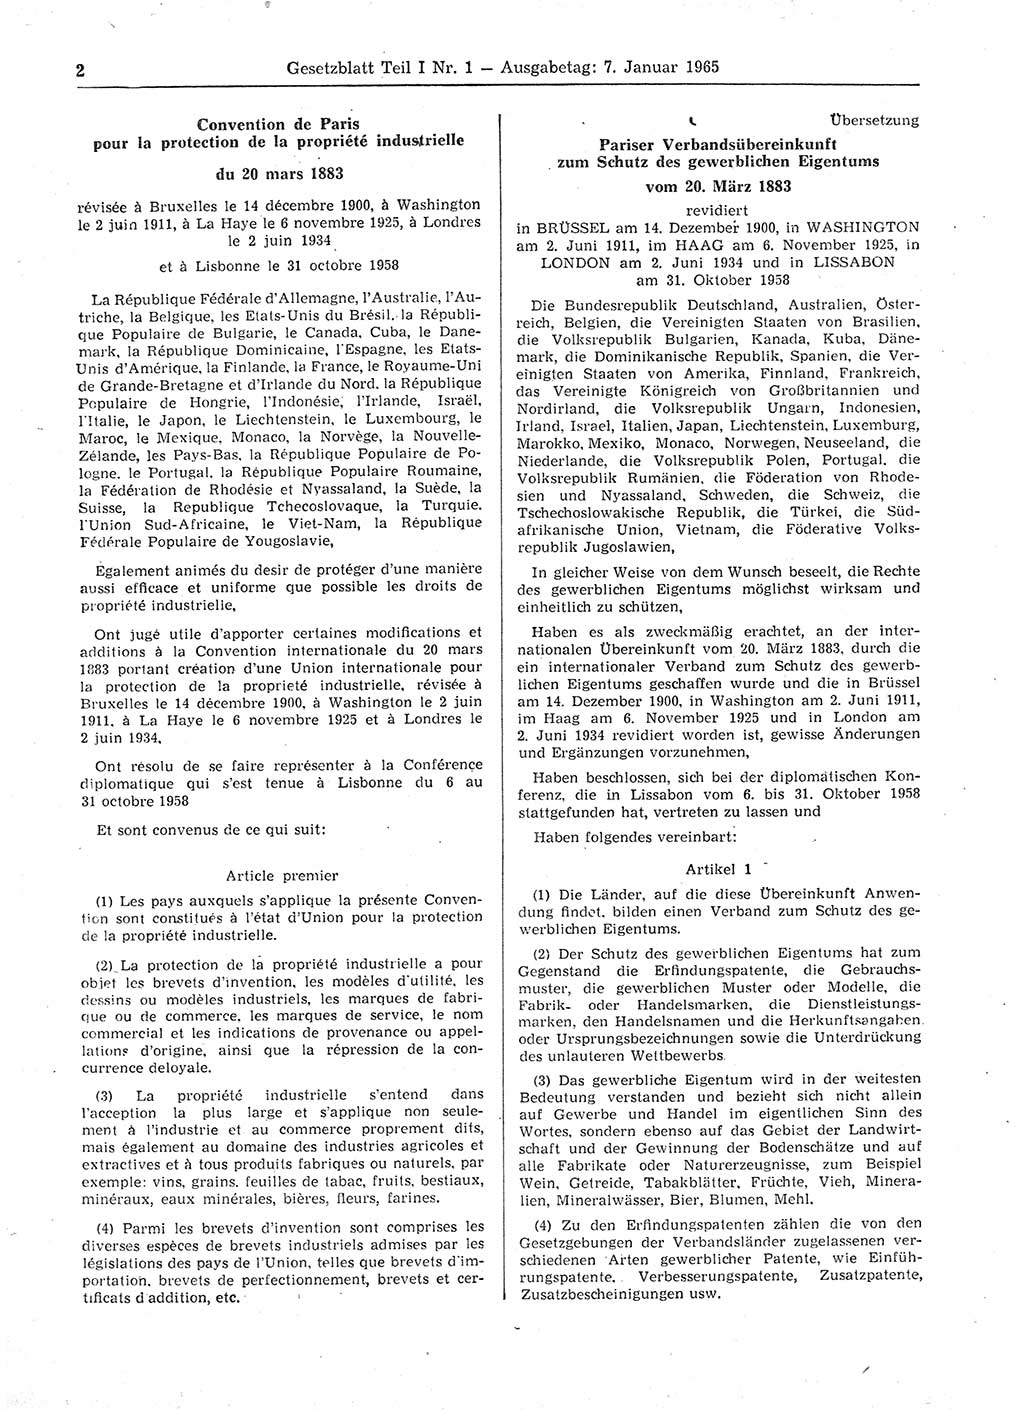 Gesetzblatt (GBl.) der Deutschen Demokratischen Republik (DDR) Teil Ⅰ 1965, Seite 2 (GBl. DDR Ⅰ 1965, S. 2)